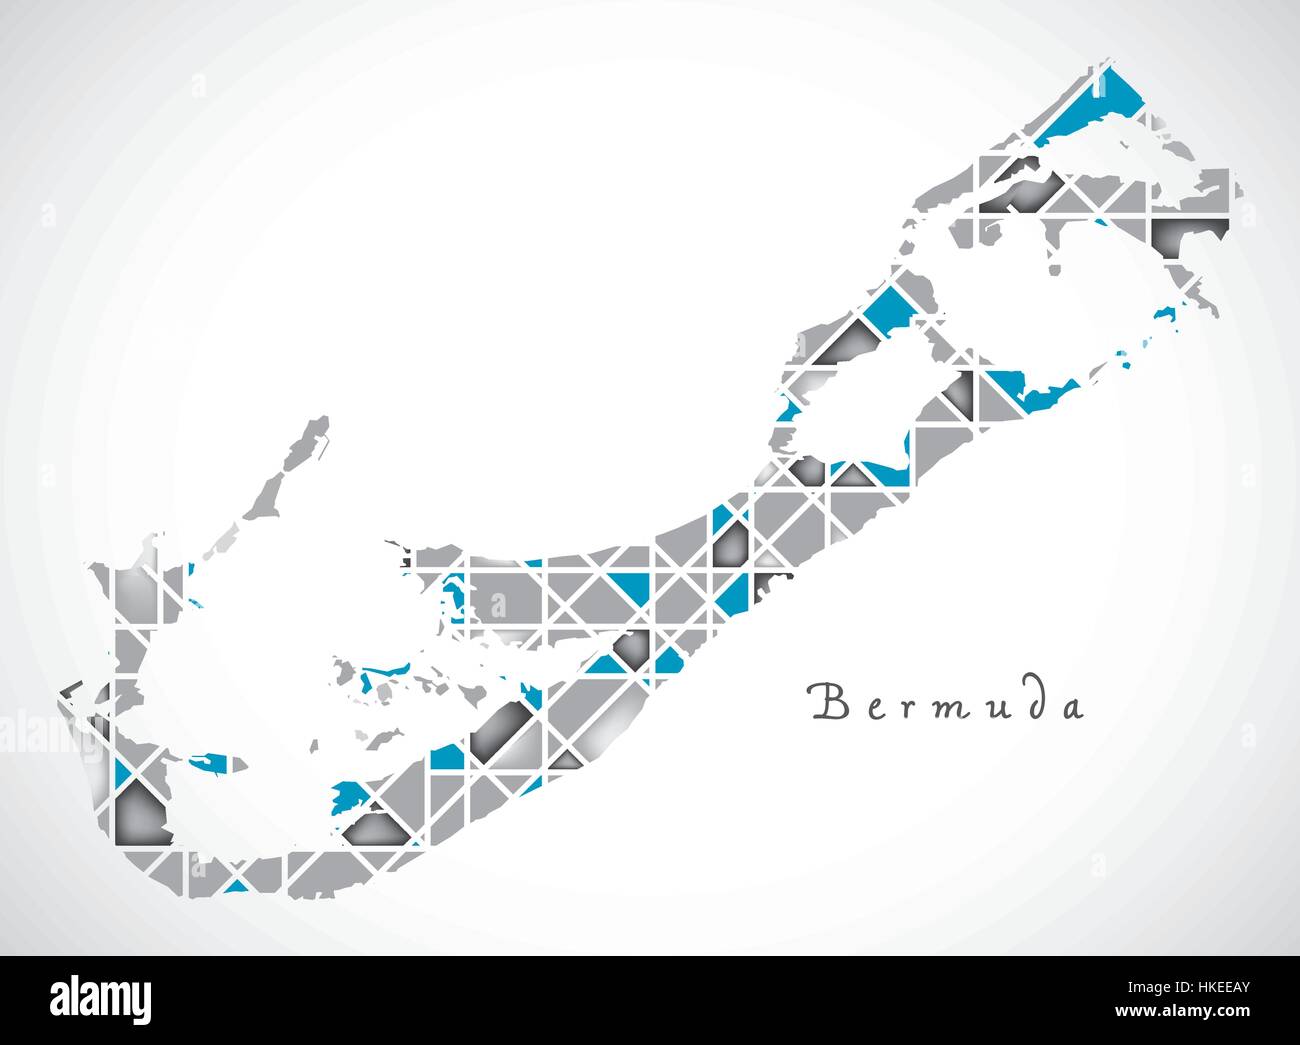 Les Bermudes Map style diamant illustration de l'oeuvre Illustration de Vecteur